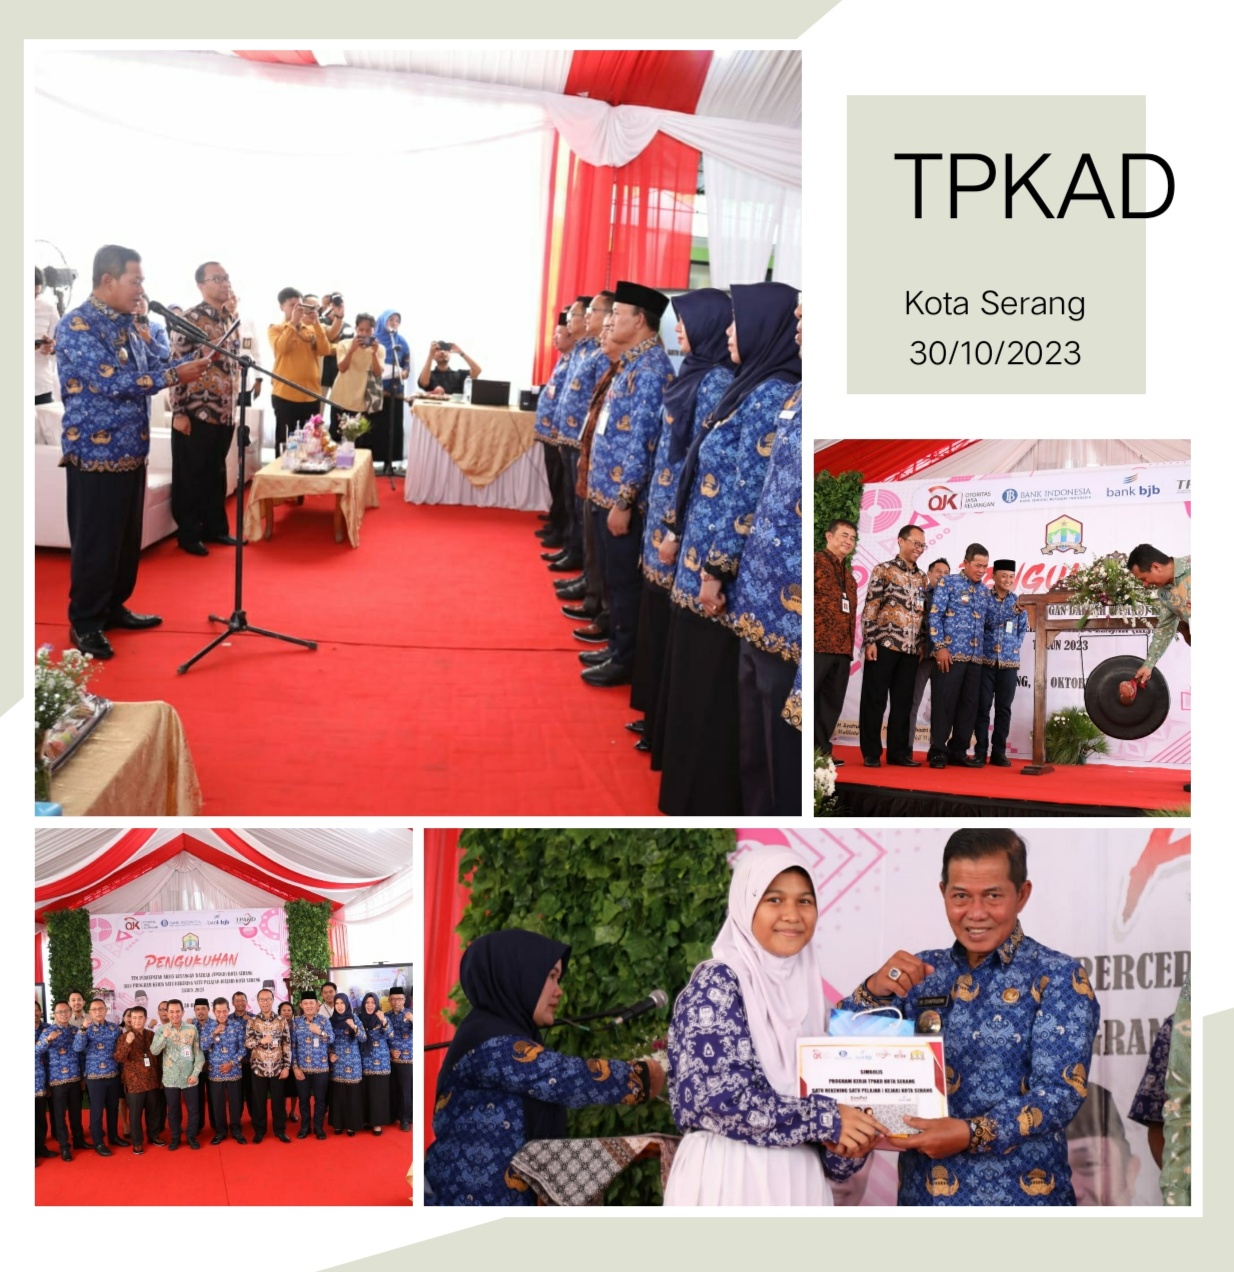 Walikota Mengukuhkan TPKAD Kota Serang dan  Launching Program KEJAR Kota Serang